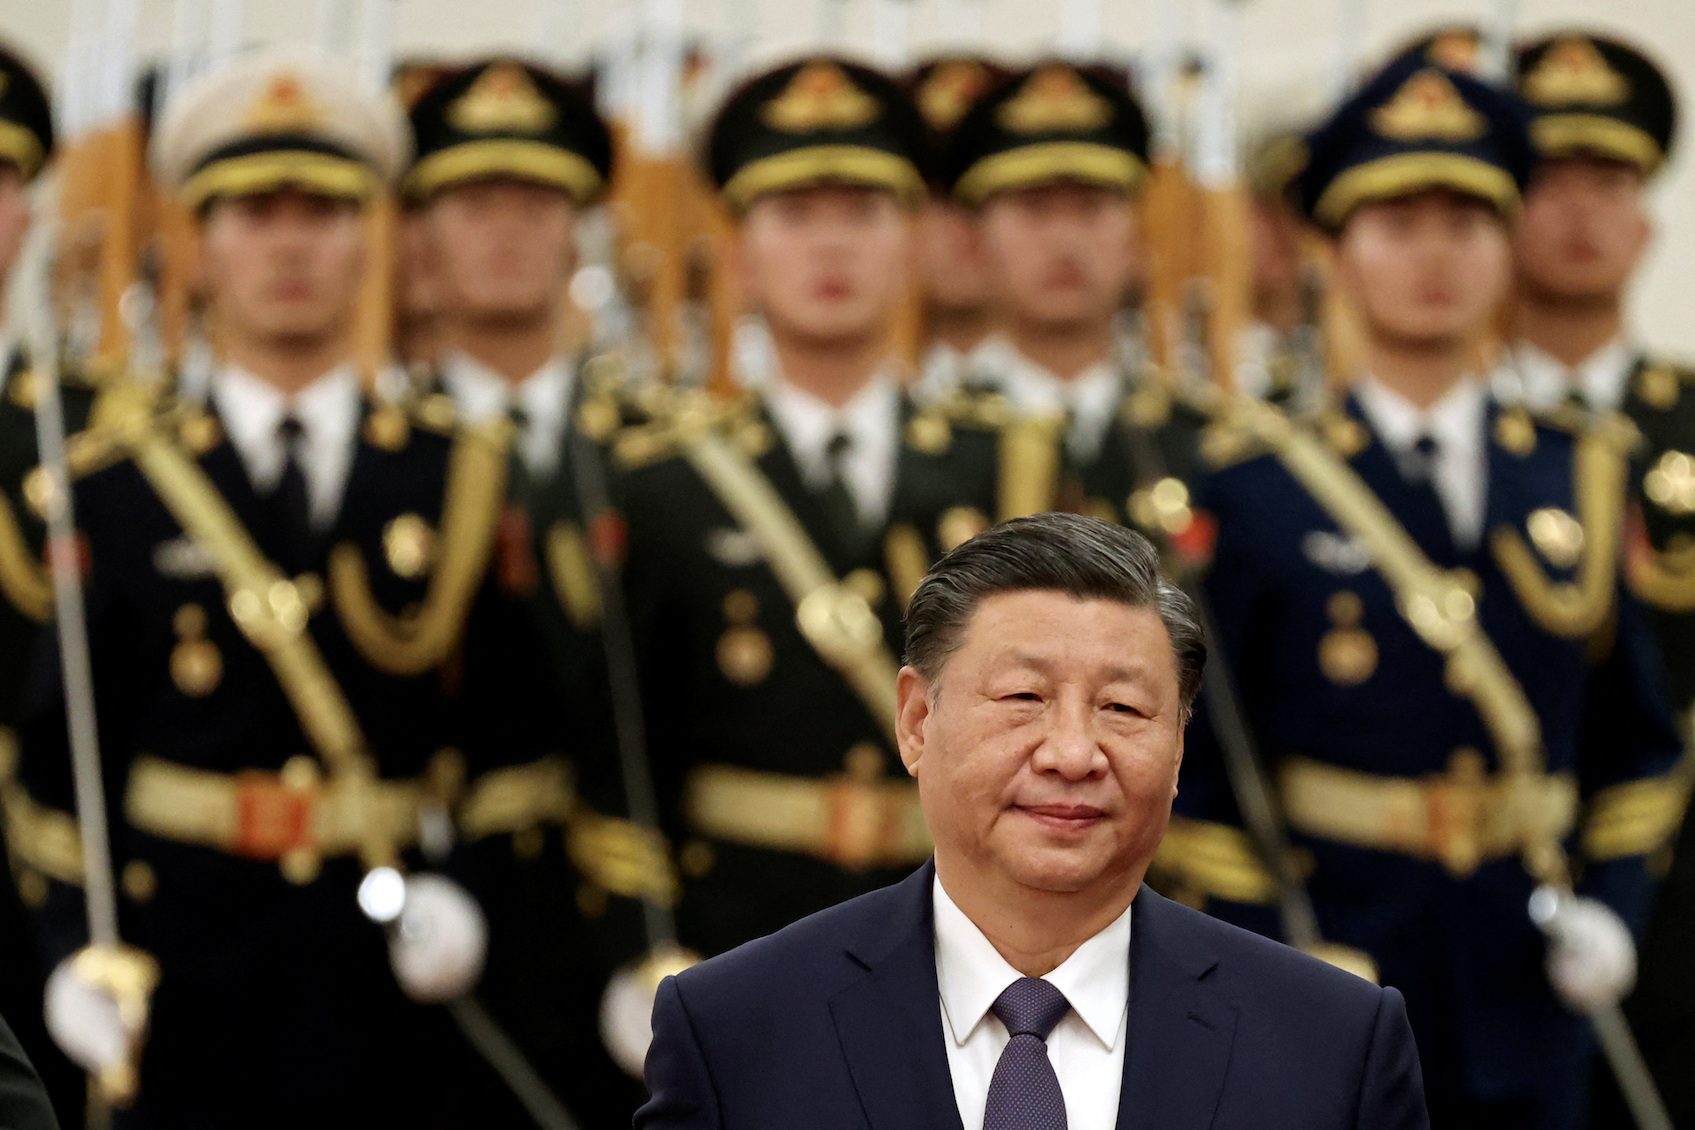 China’s Xi arrives in Vietnam, looking to strengthen ties